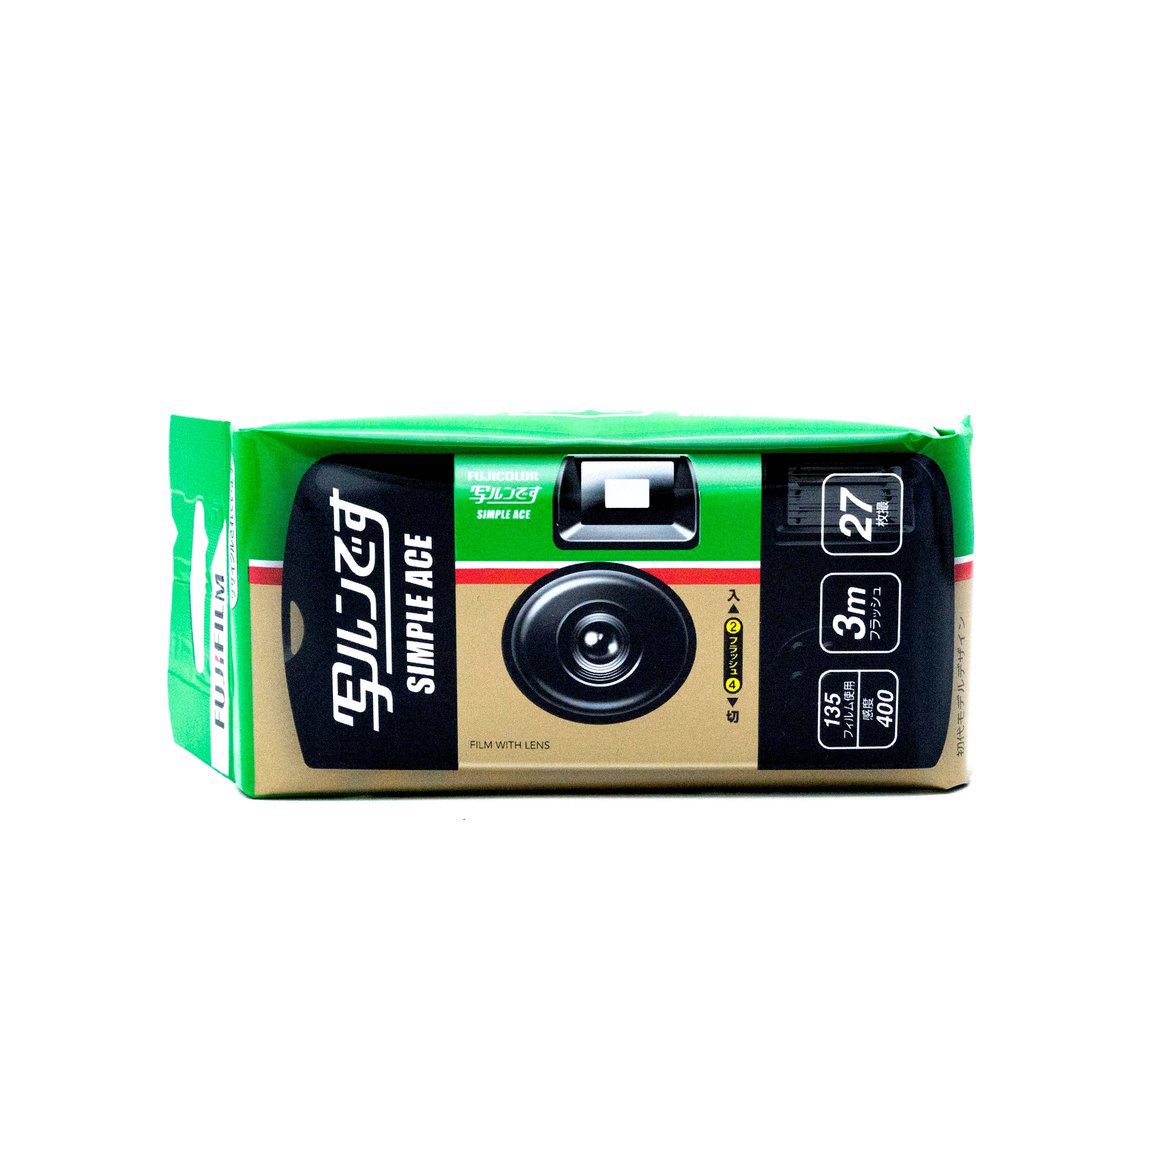 ข้อดีของกล้องฟิล์ม Fujifilm Simple Ace 400 ที่บอกเลยว่าใช้งานง่าย มือใหม่ต้องลอง